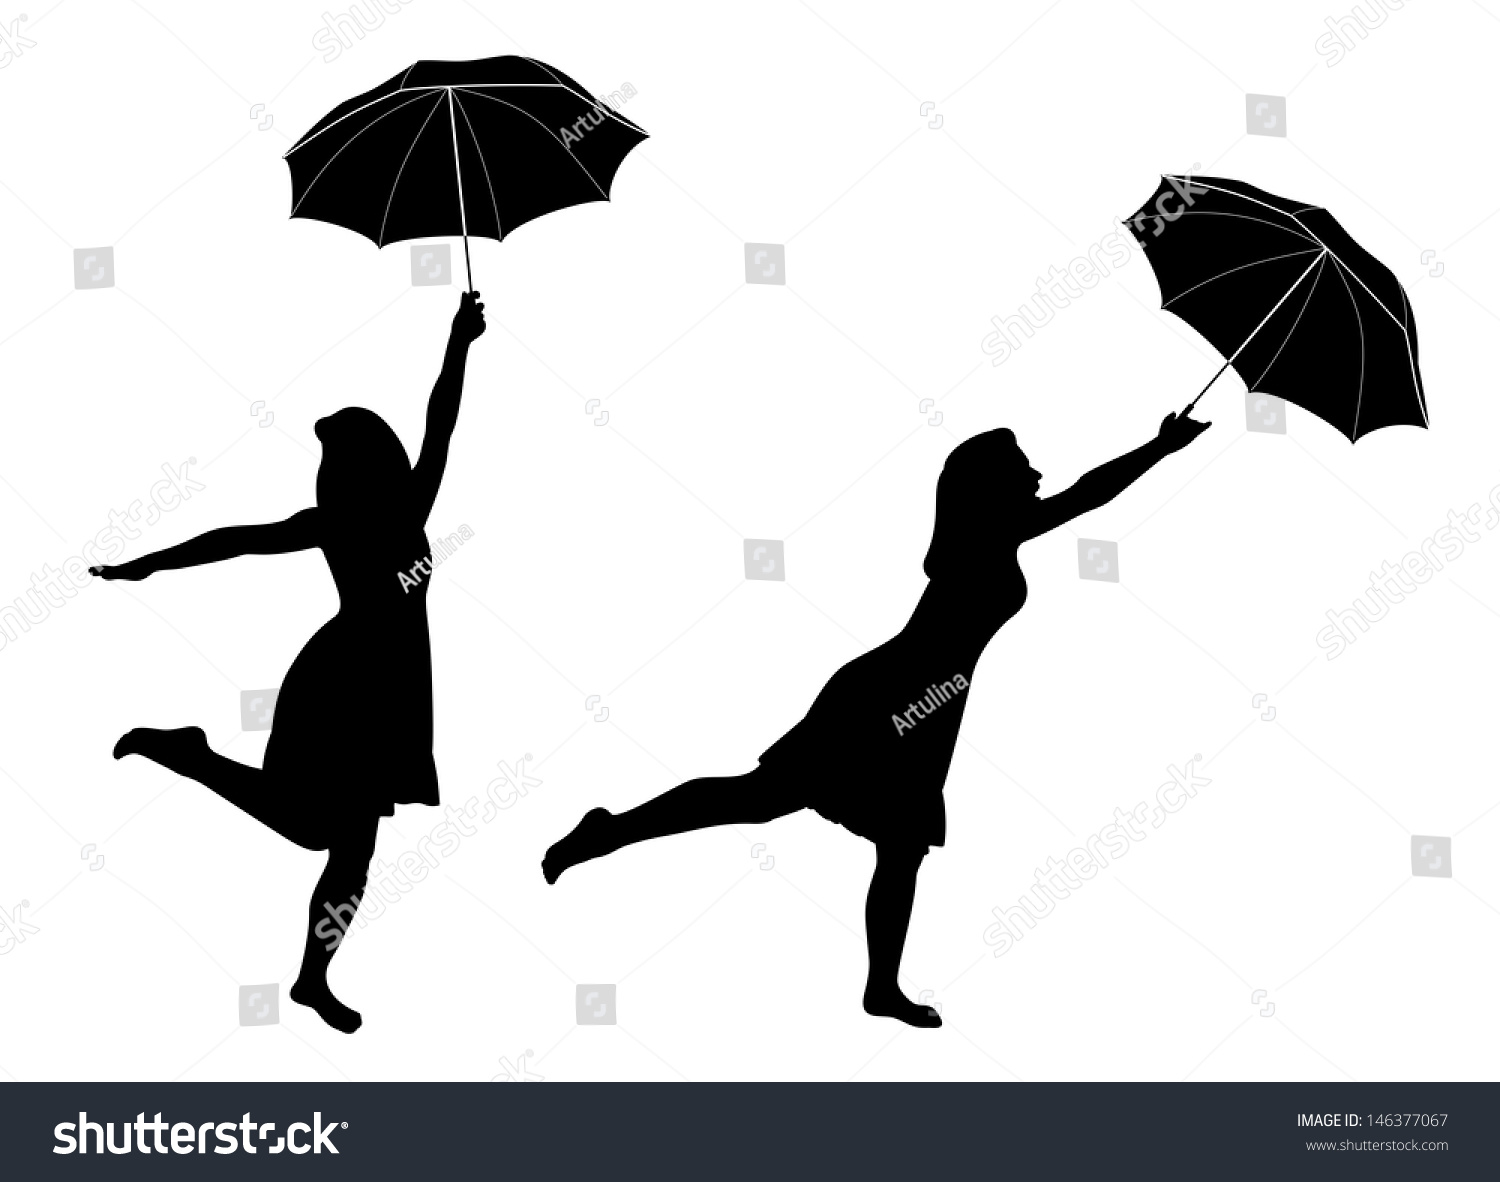 clipart rain dance - photo #44